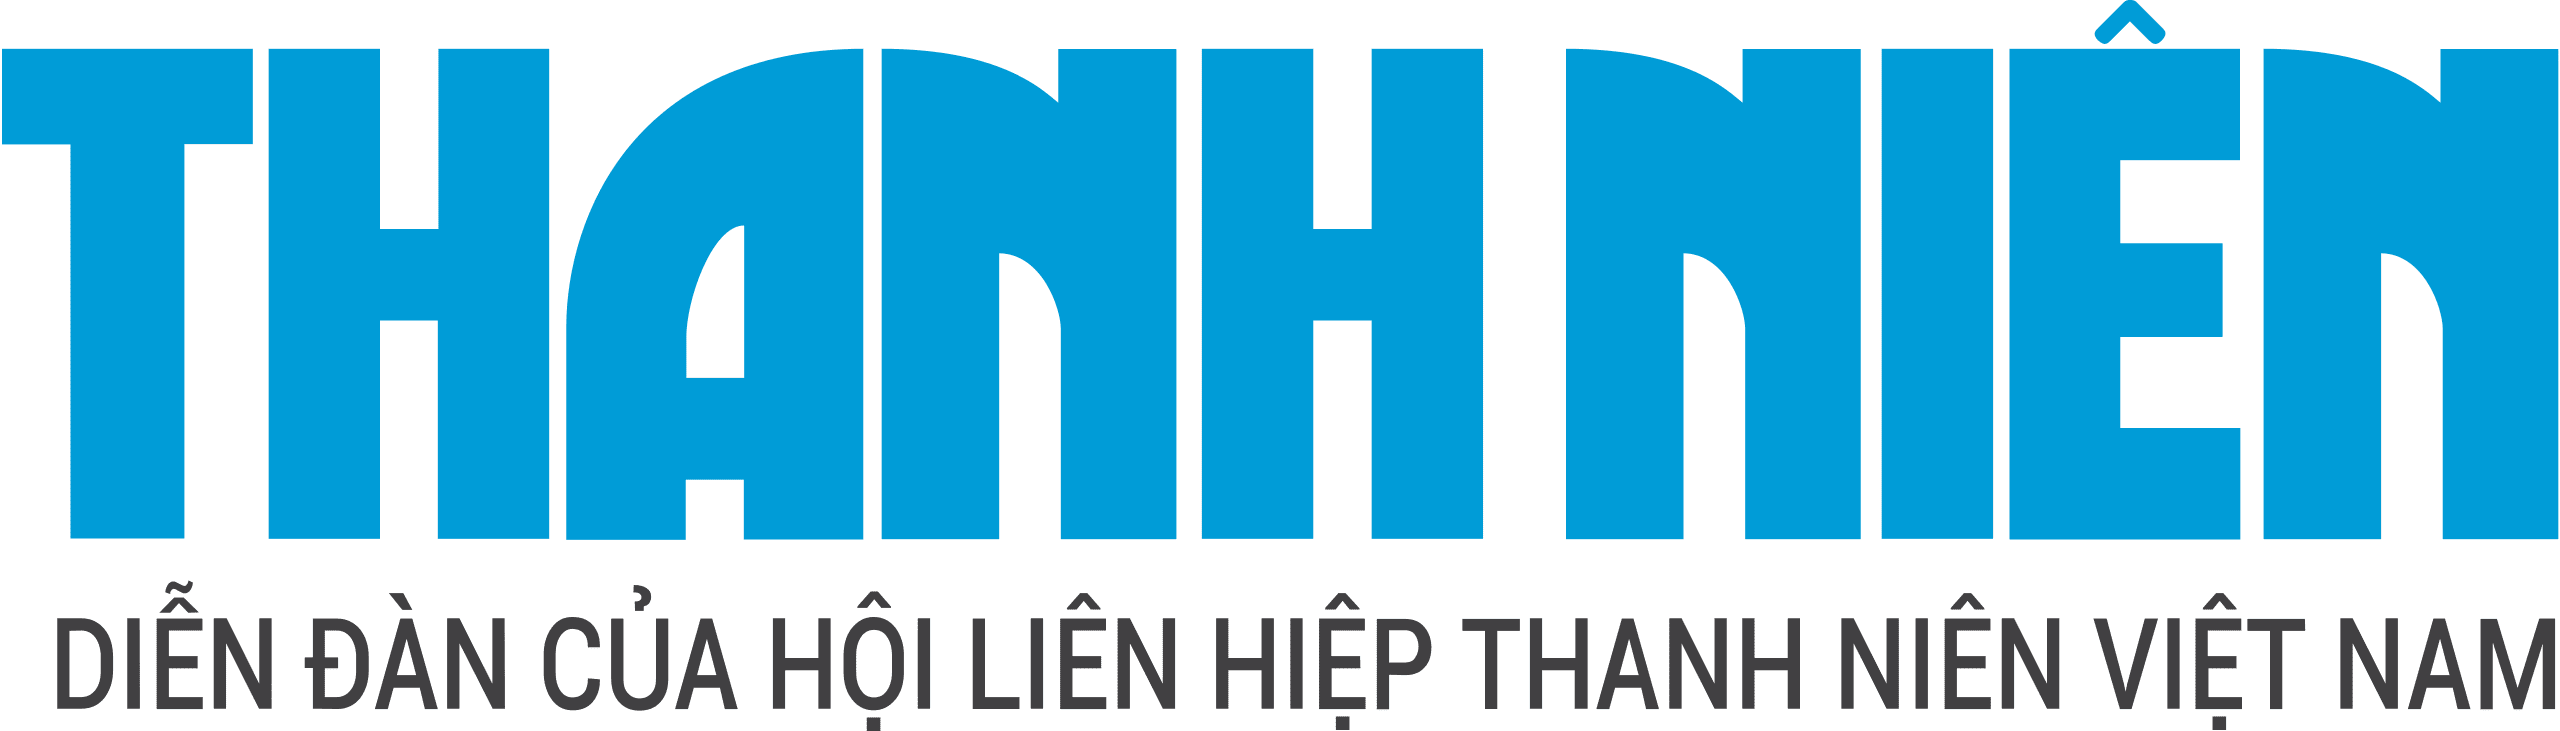 Thanh_Niên_logo